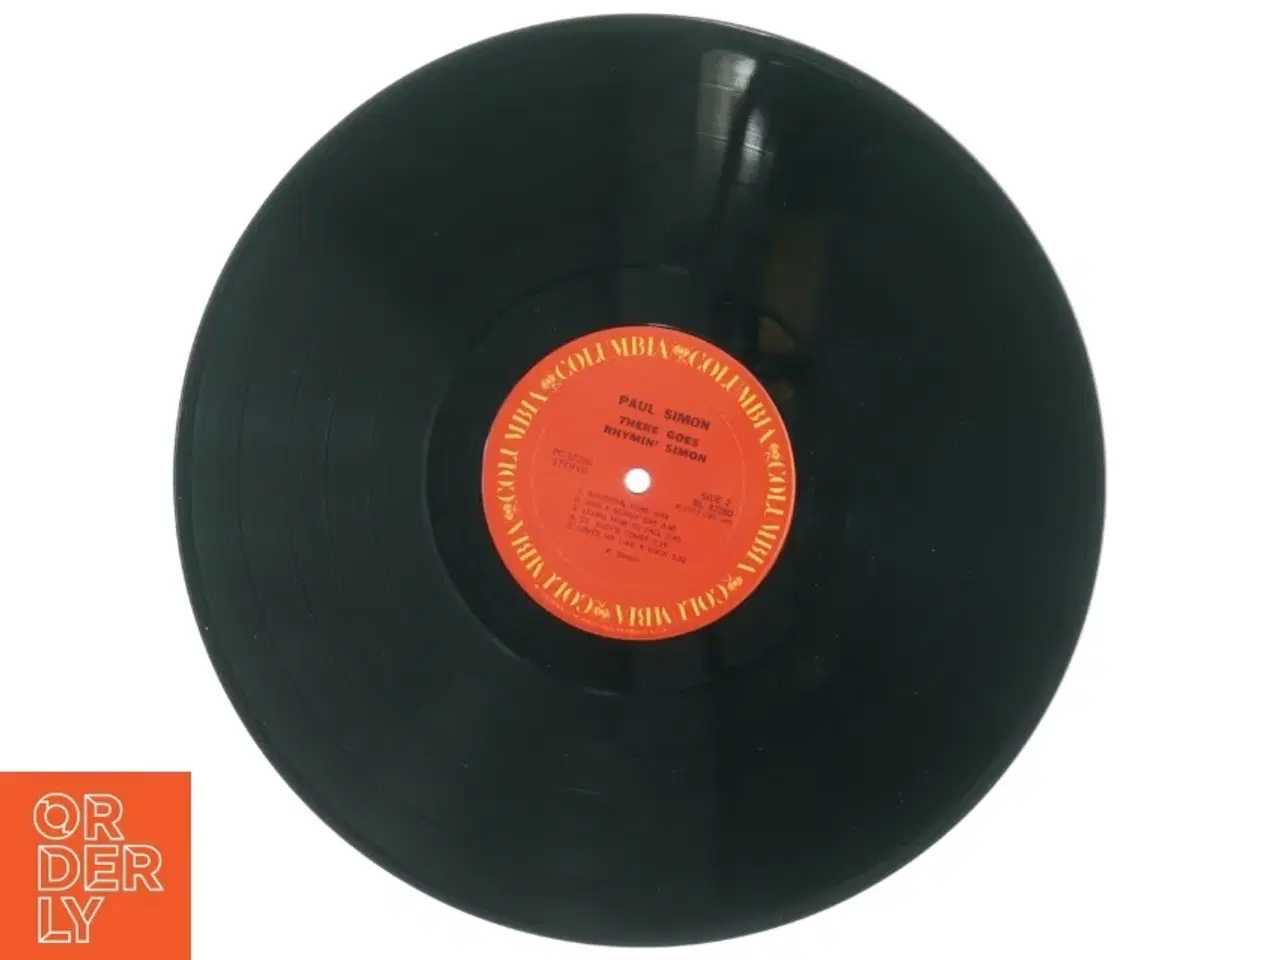 Billede 3 - Paul Simon 'There Goes Rhymin' Simon' Vinyl LP fra Columbia (str. 31 x 31 cm)